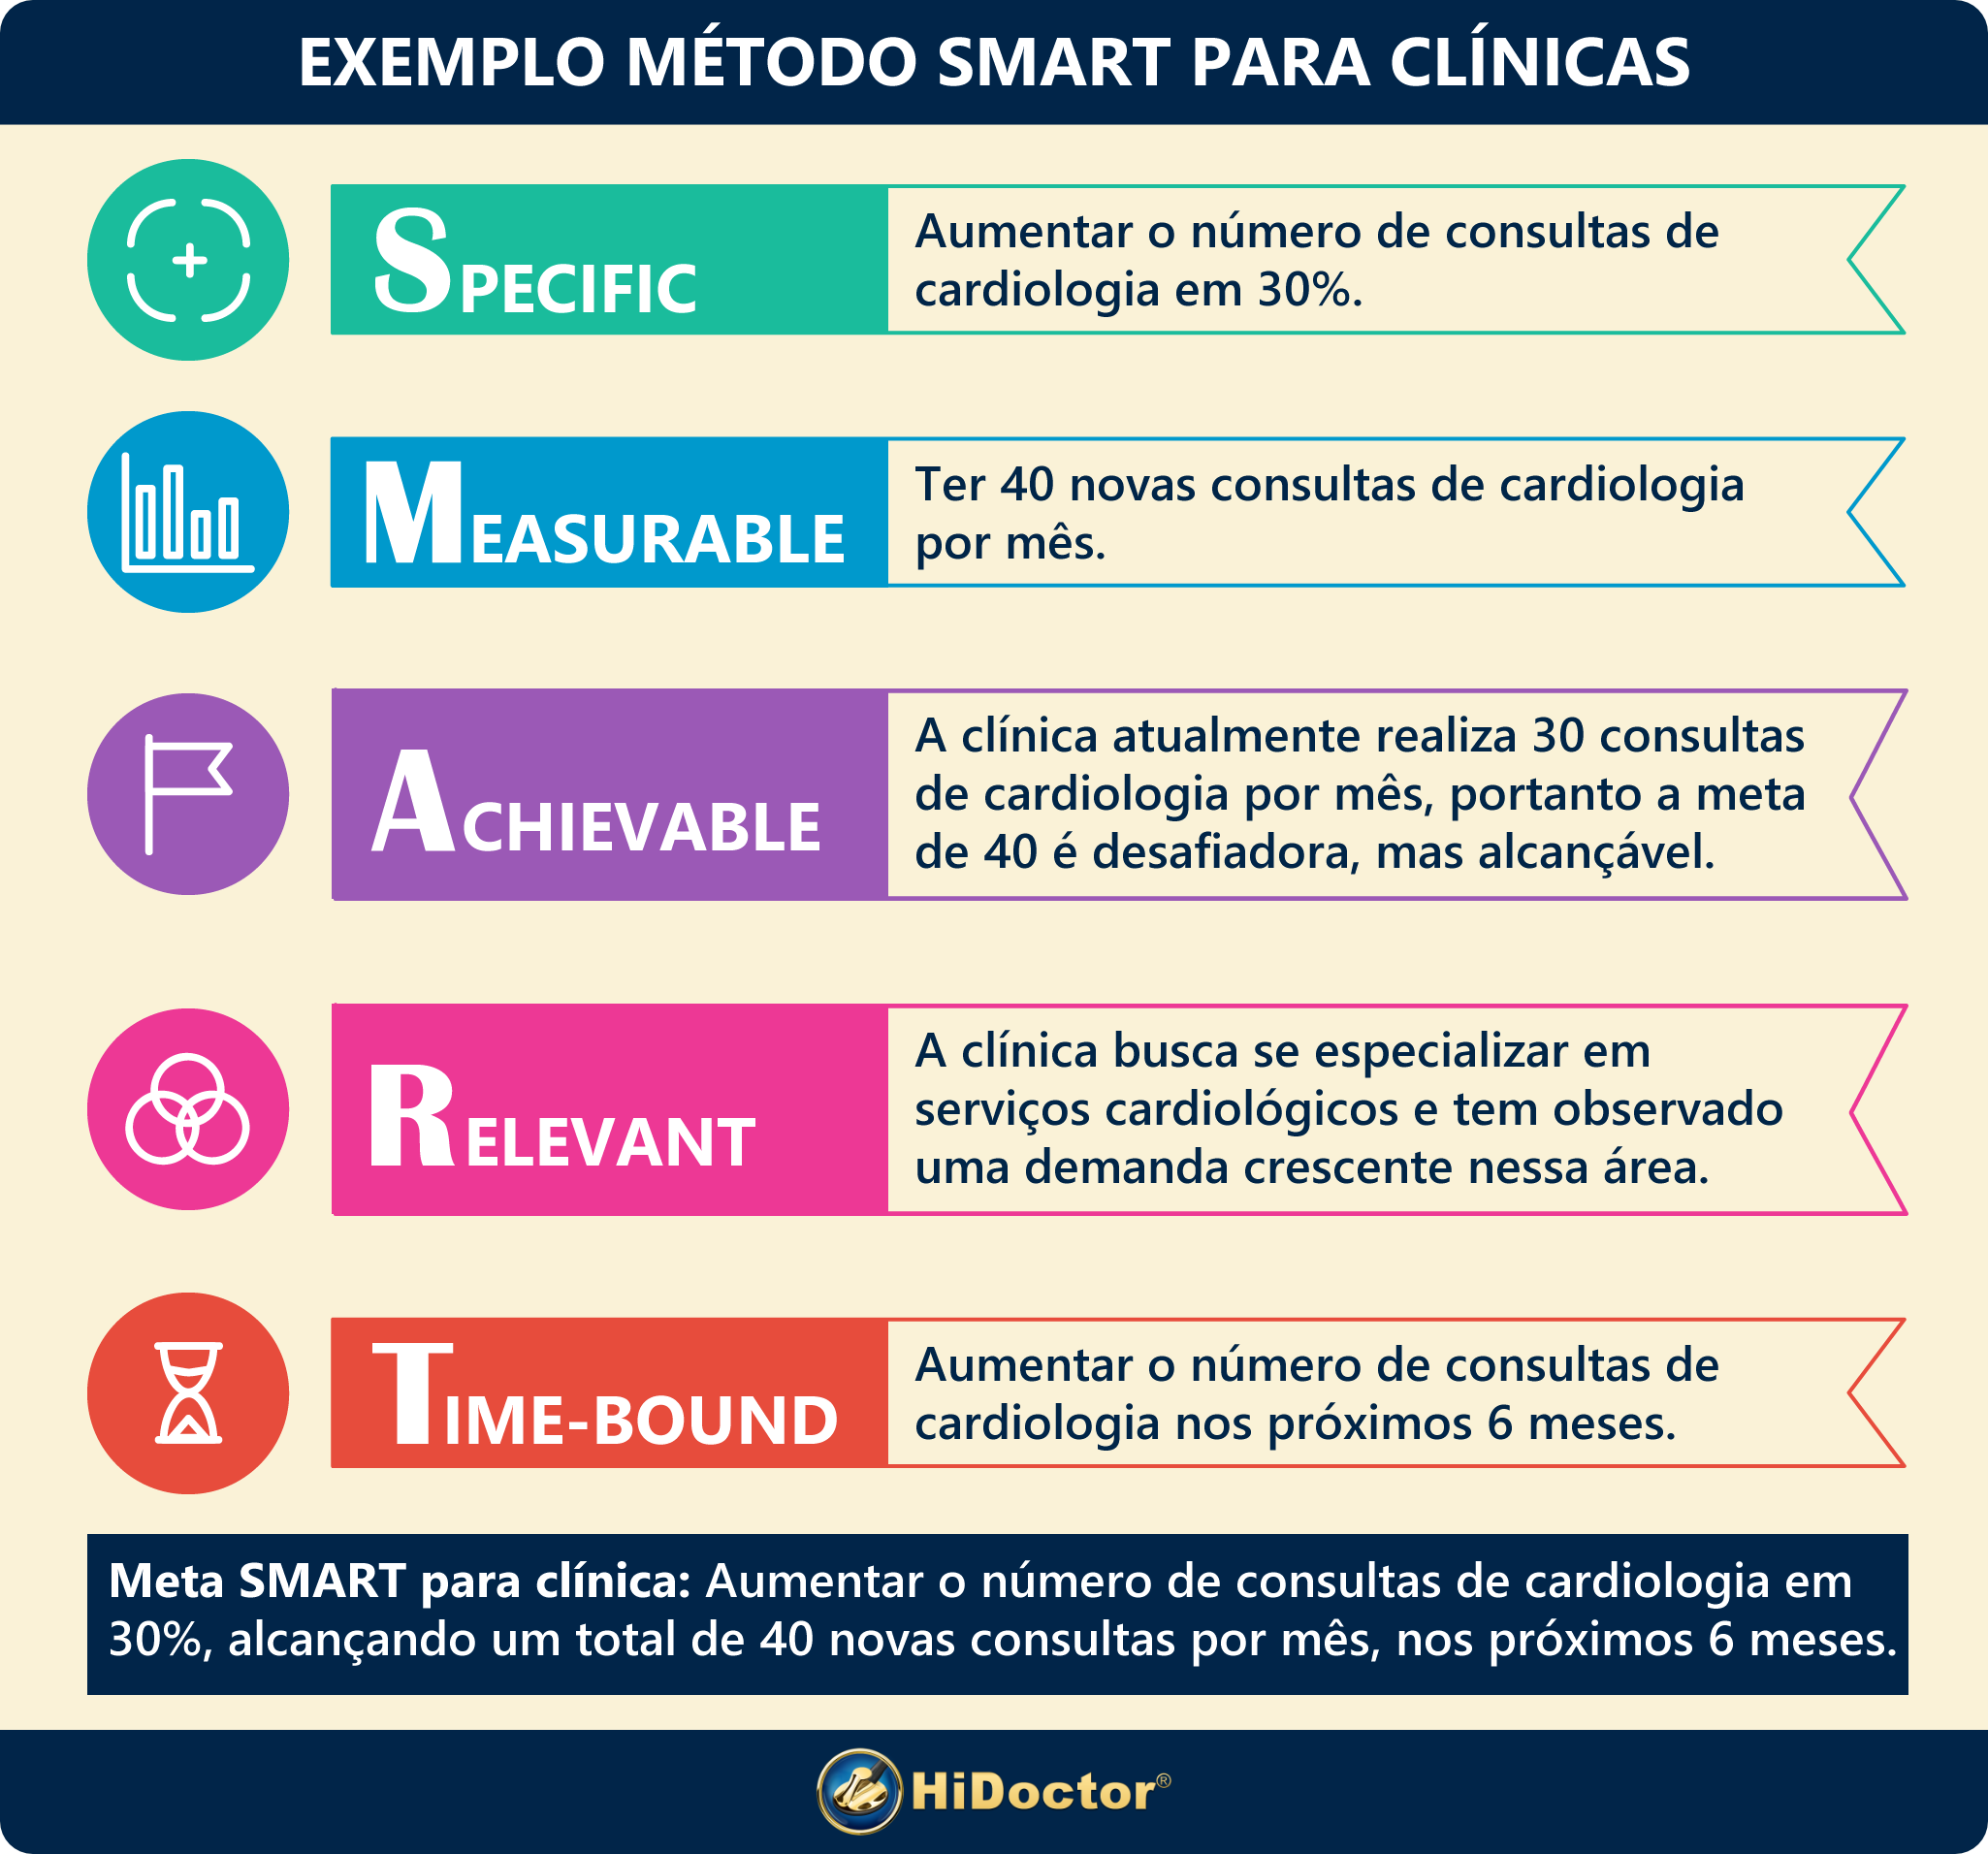 Exemplo do método SMART para clínicas médicas